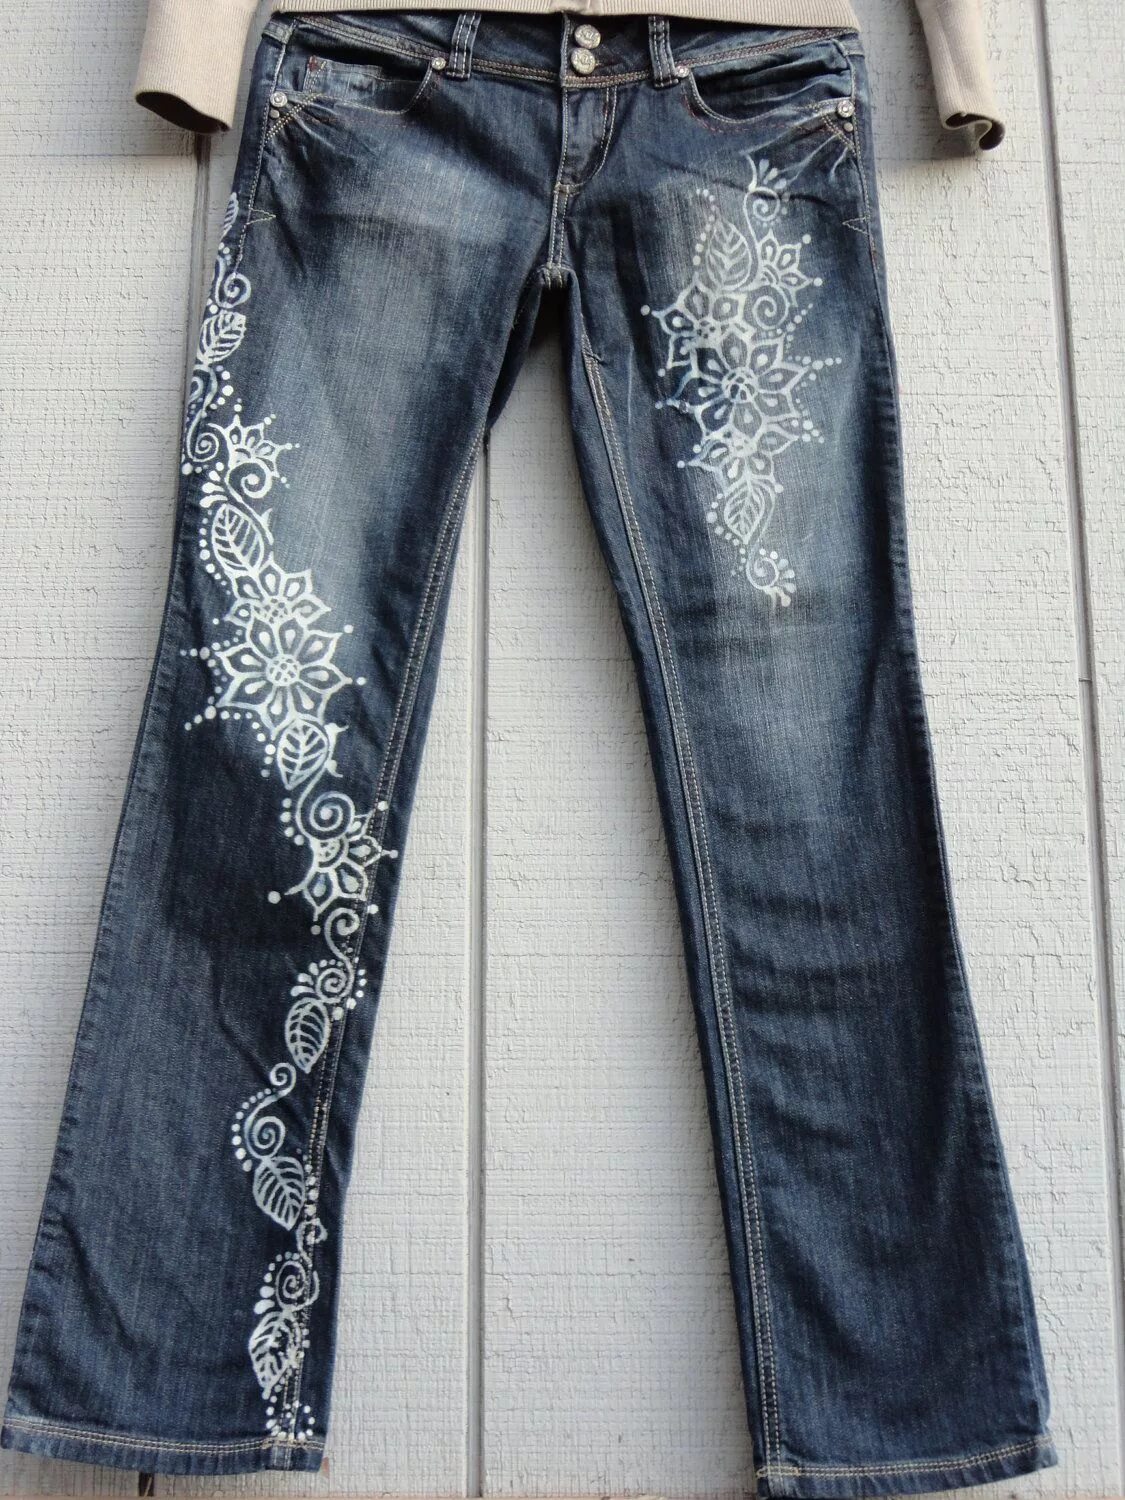 Кастом джинс 2022. Джинсы декорированные. Разрисованные джинсы. Разукрашенные джинсы. Как украсить джинсы